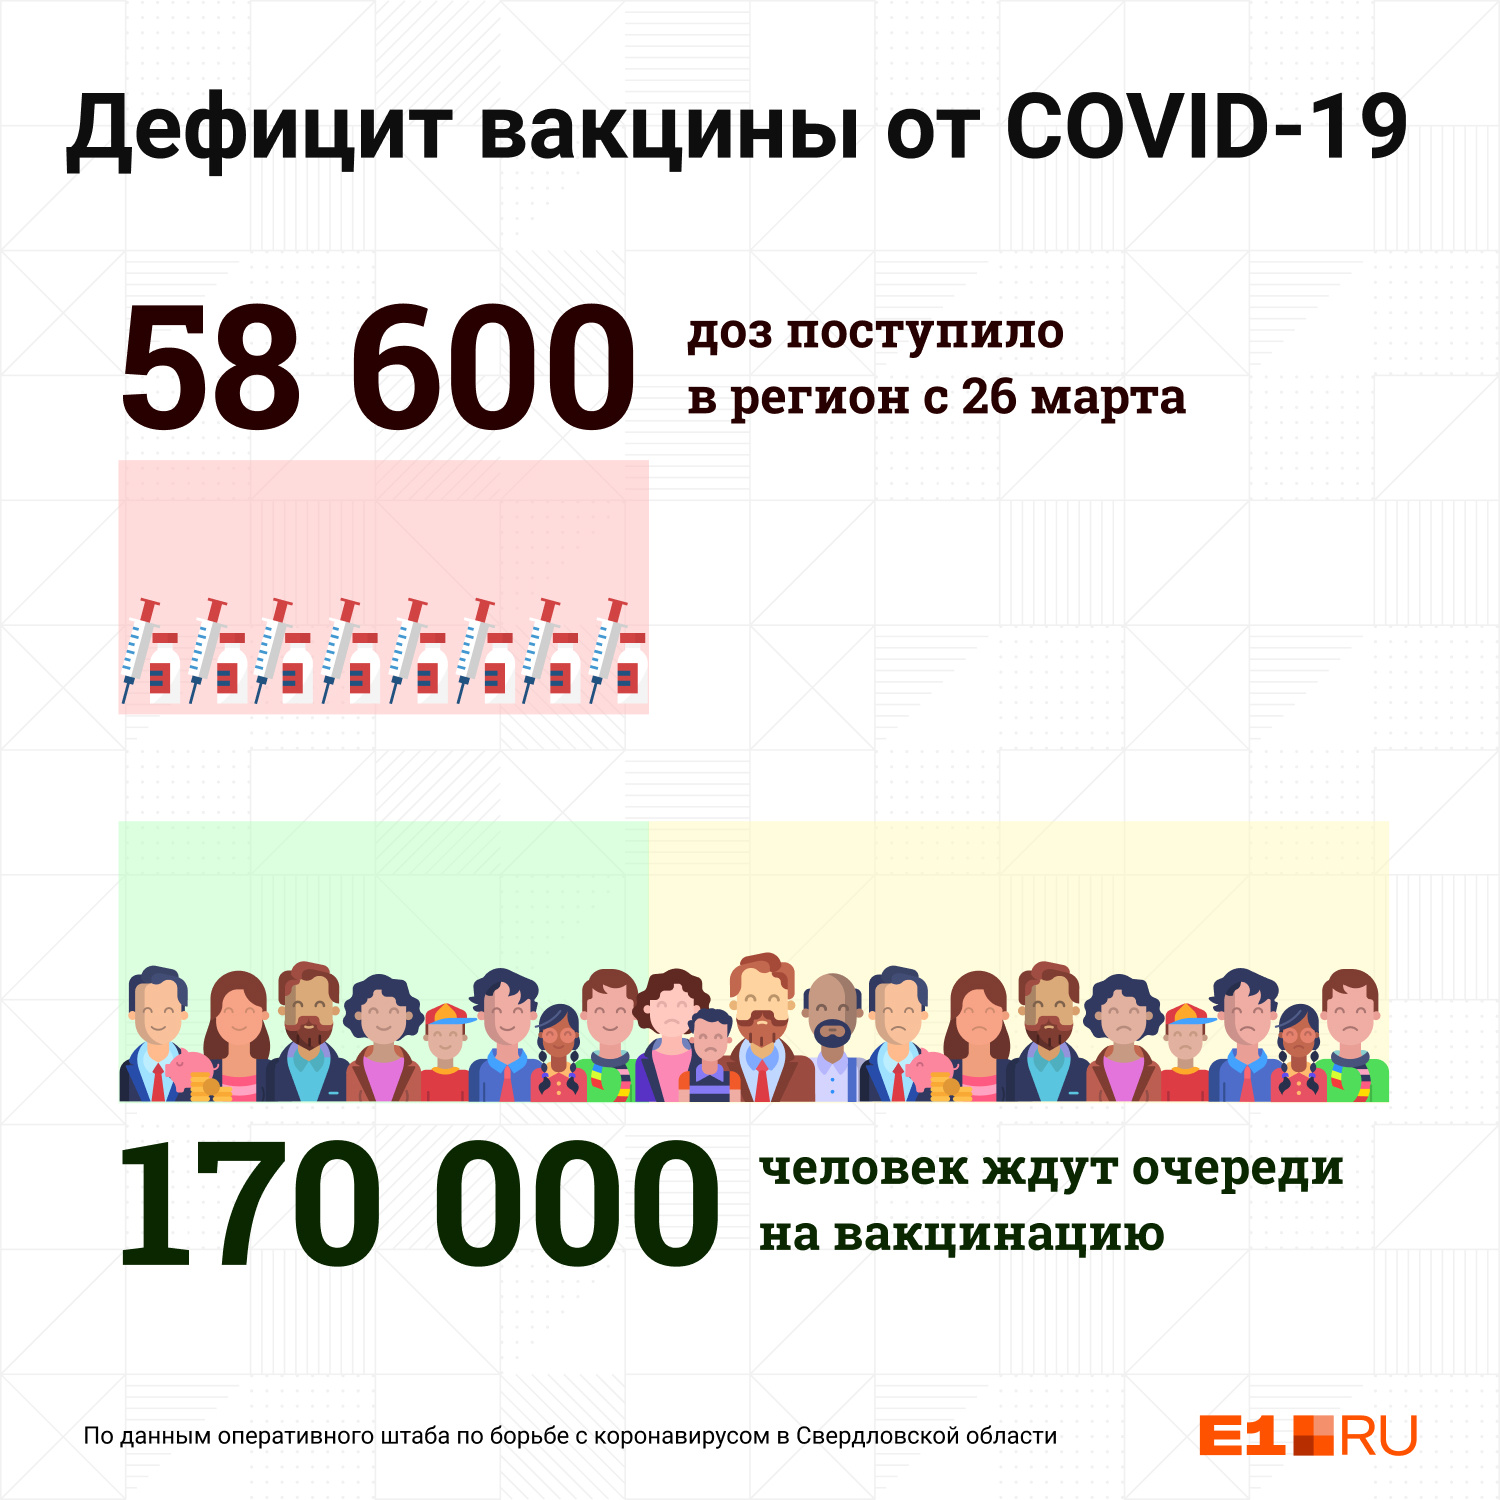 Две недели назад Павел Креков заявил, что в очереди на вакцинацию стоят более 200 тысяч свердловчан. На сегодняшний день она сократилась до 170 тысяч